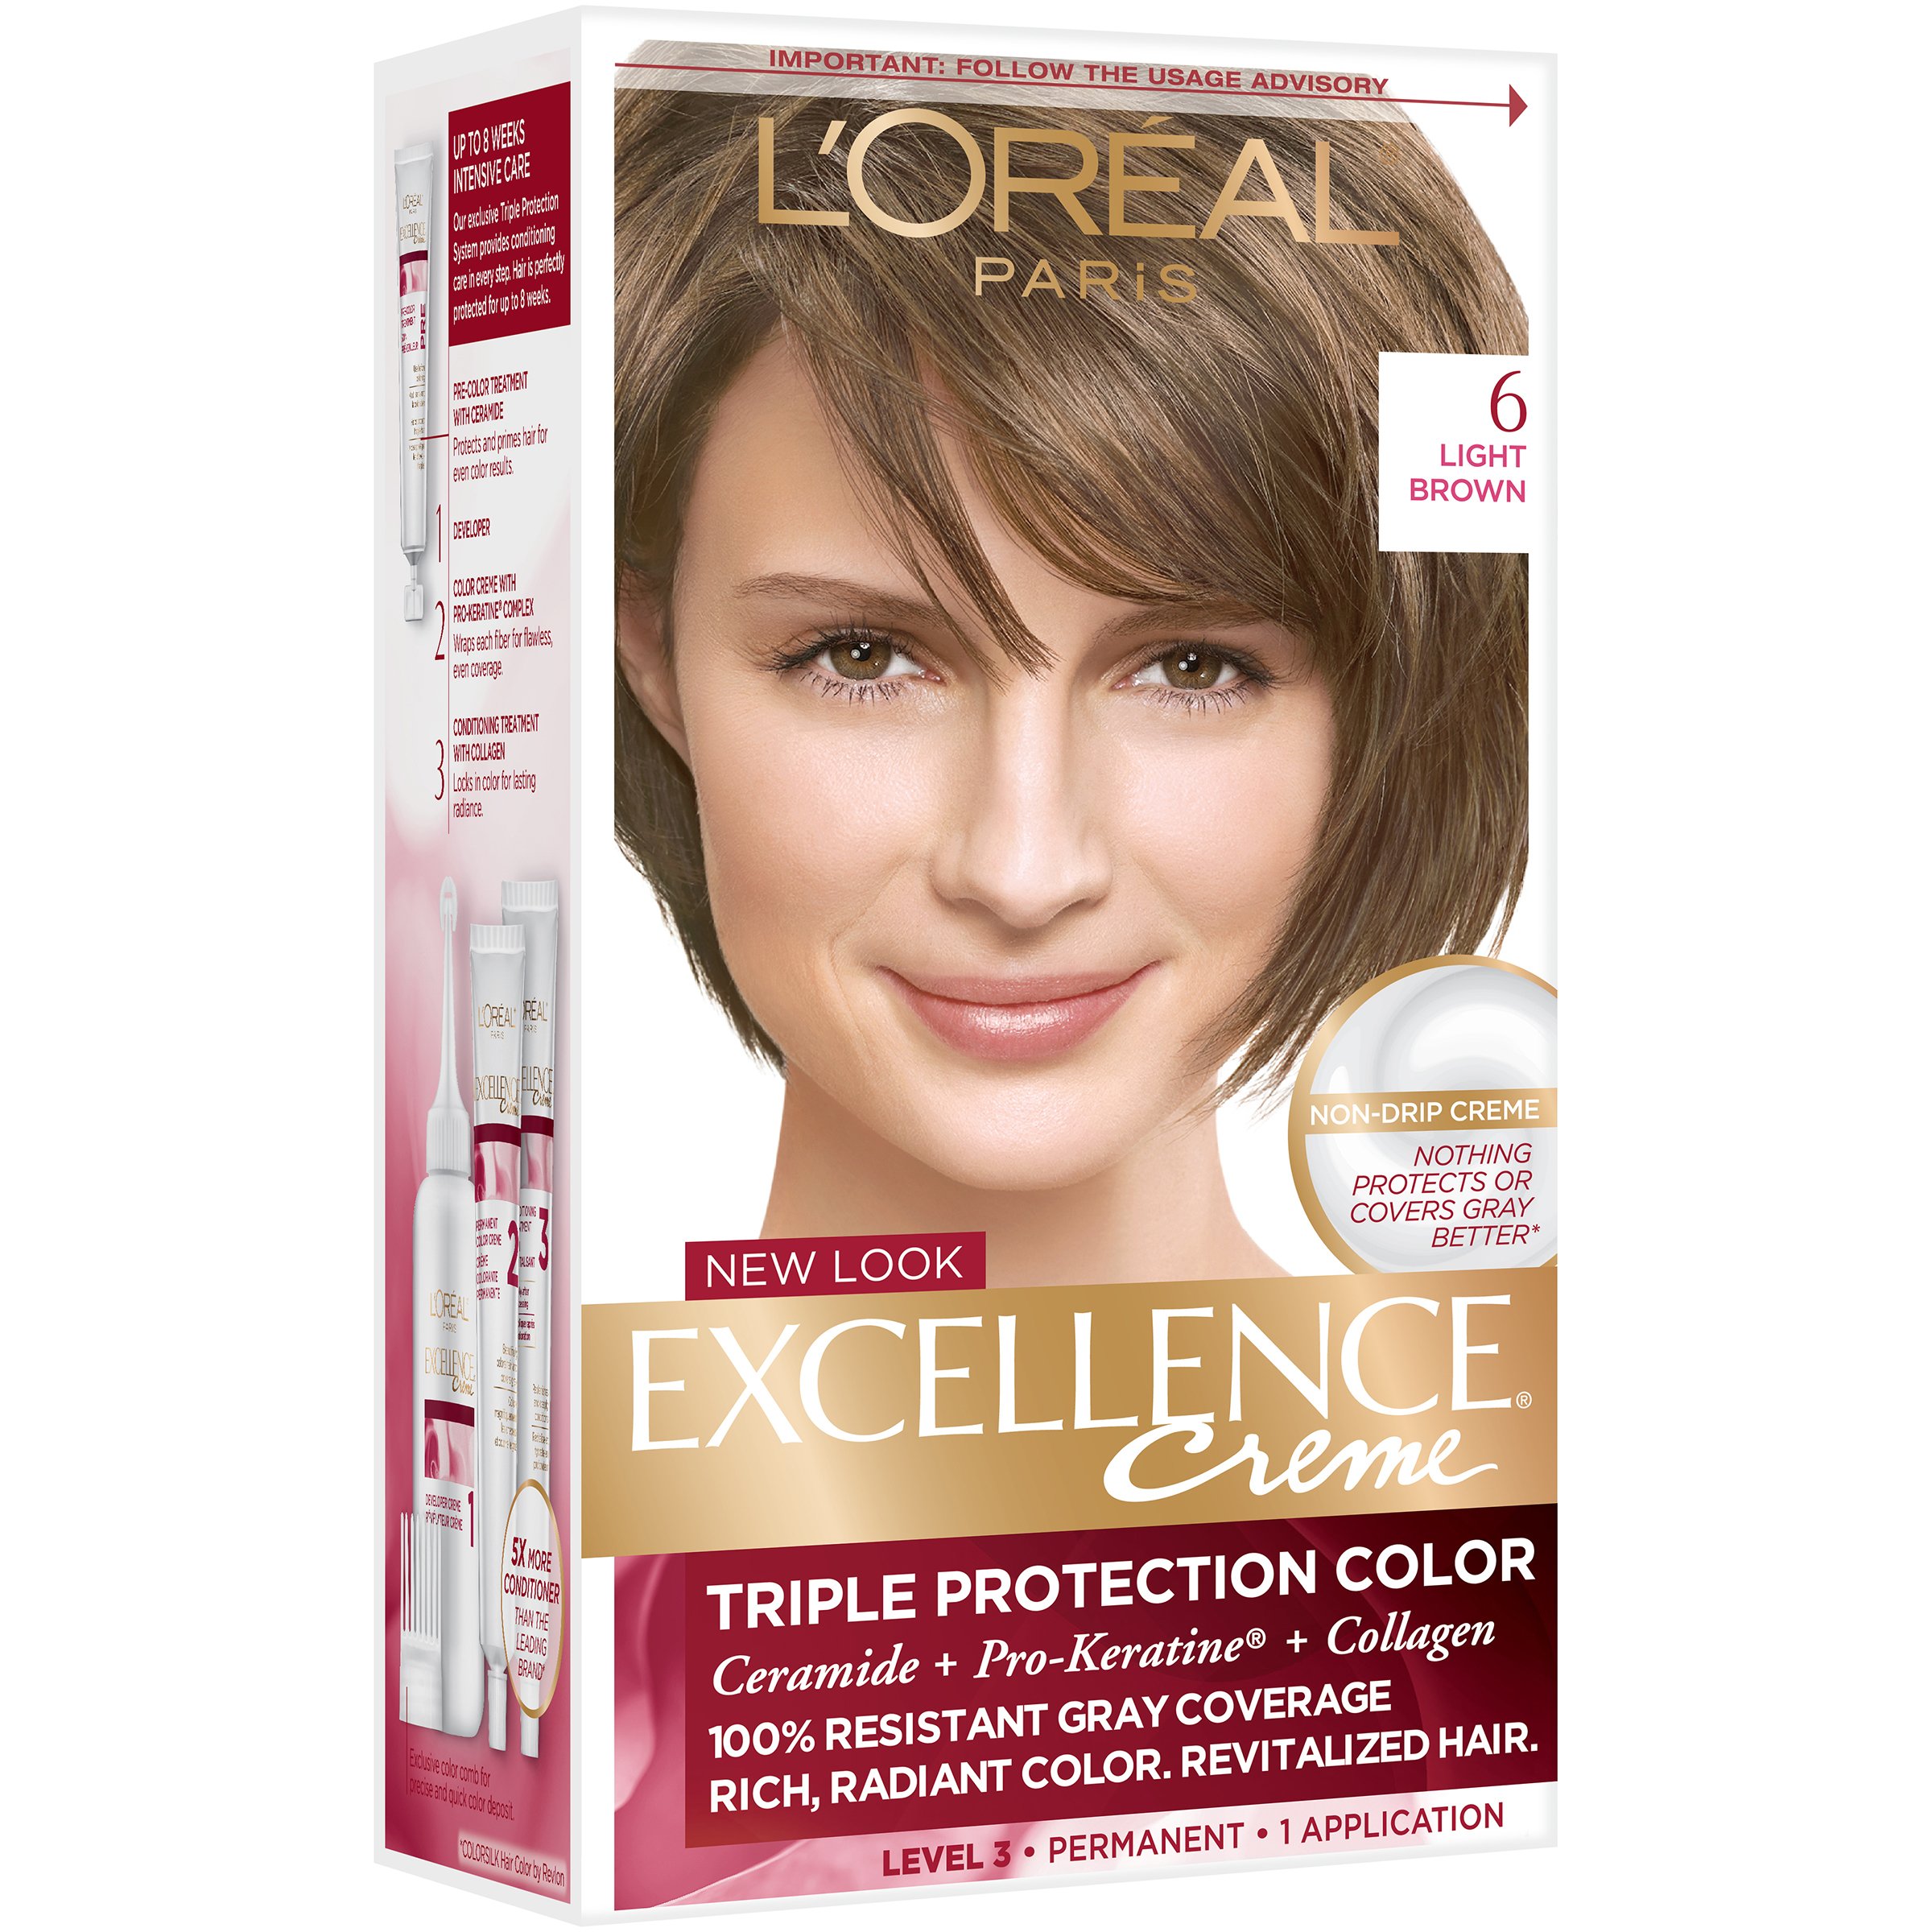 L'Oréal Paris Créme Permanent Hair 6 Light Brown - Shop Hair Color at H-E-B